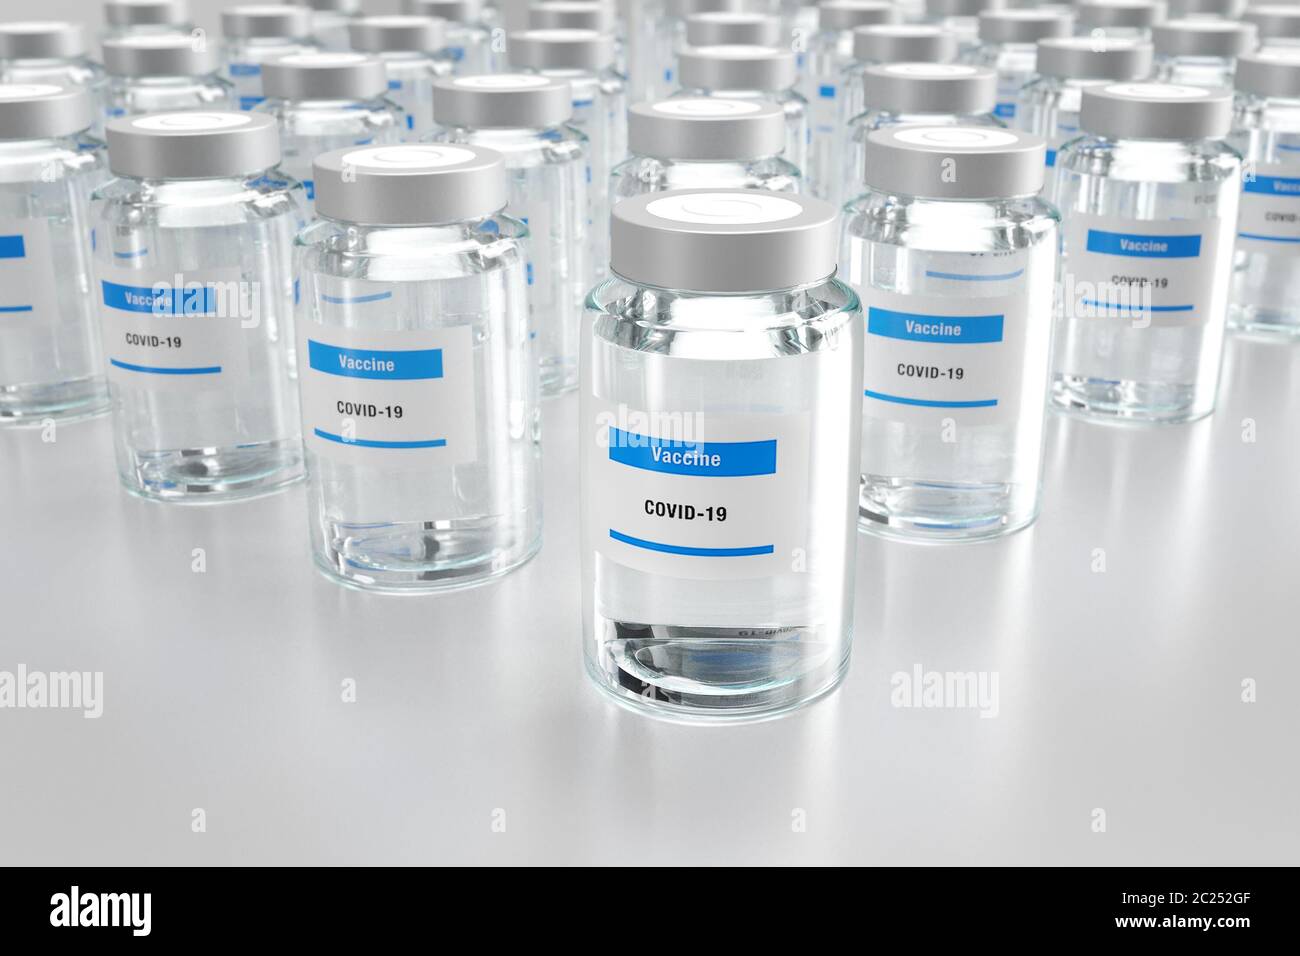 Illustrazione 3d con file di fiale di vetro contenenti vaccino Covid-19 Foto Stock